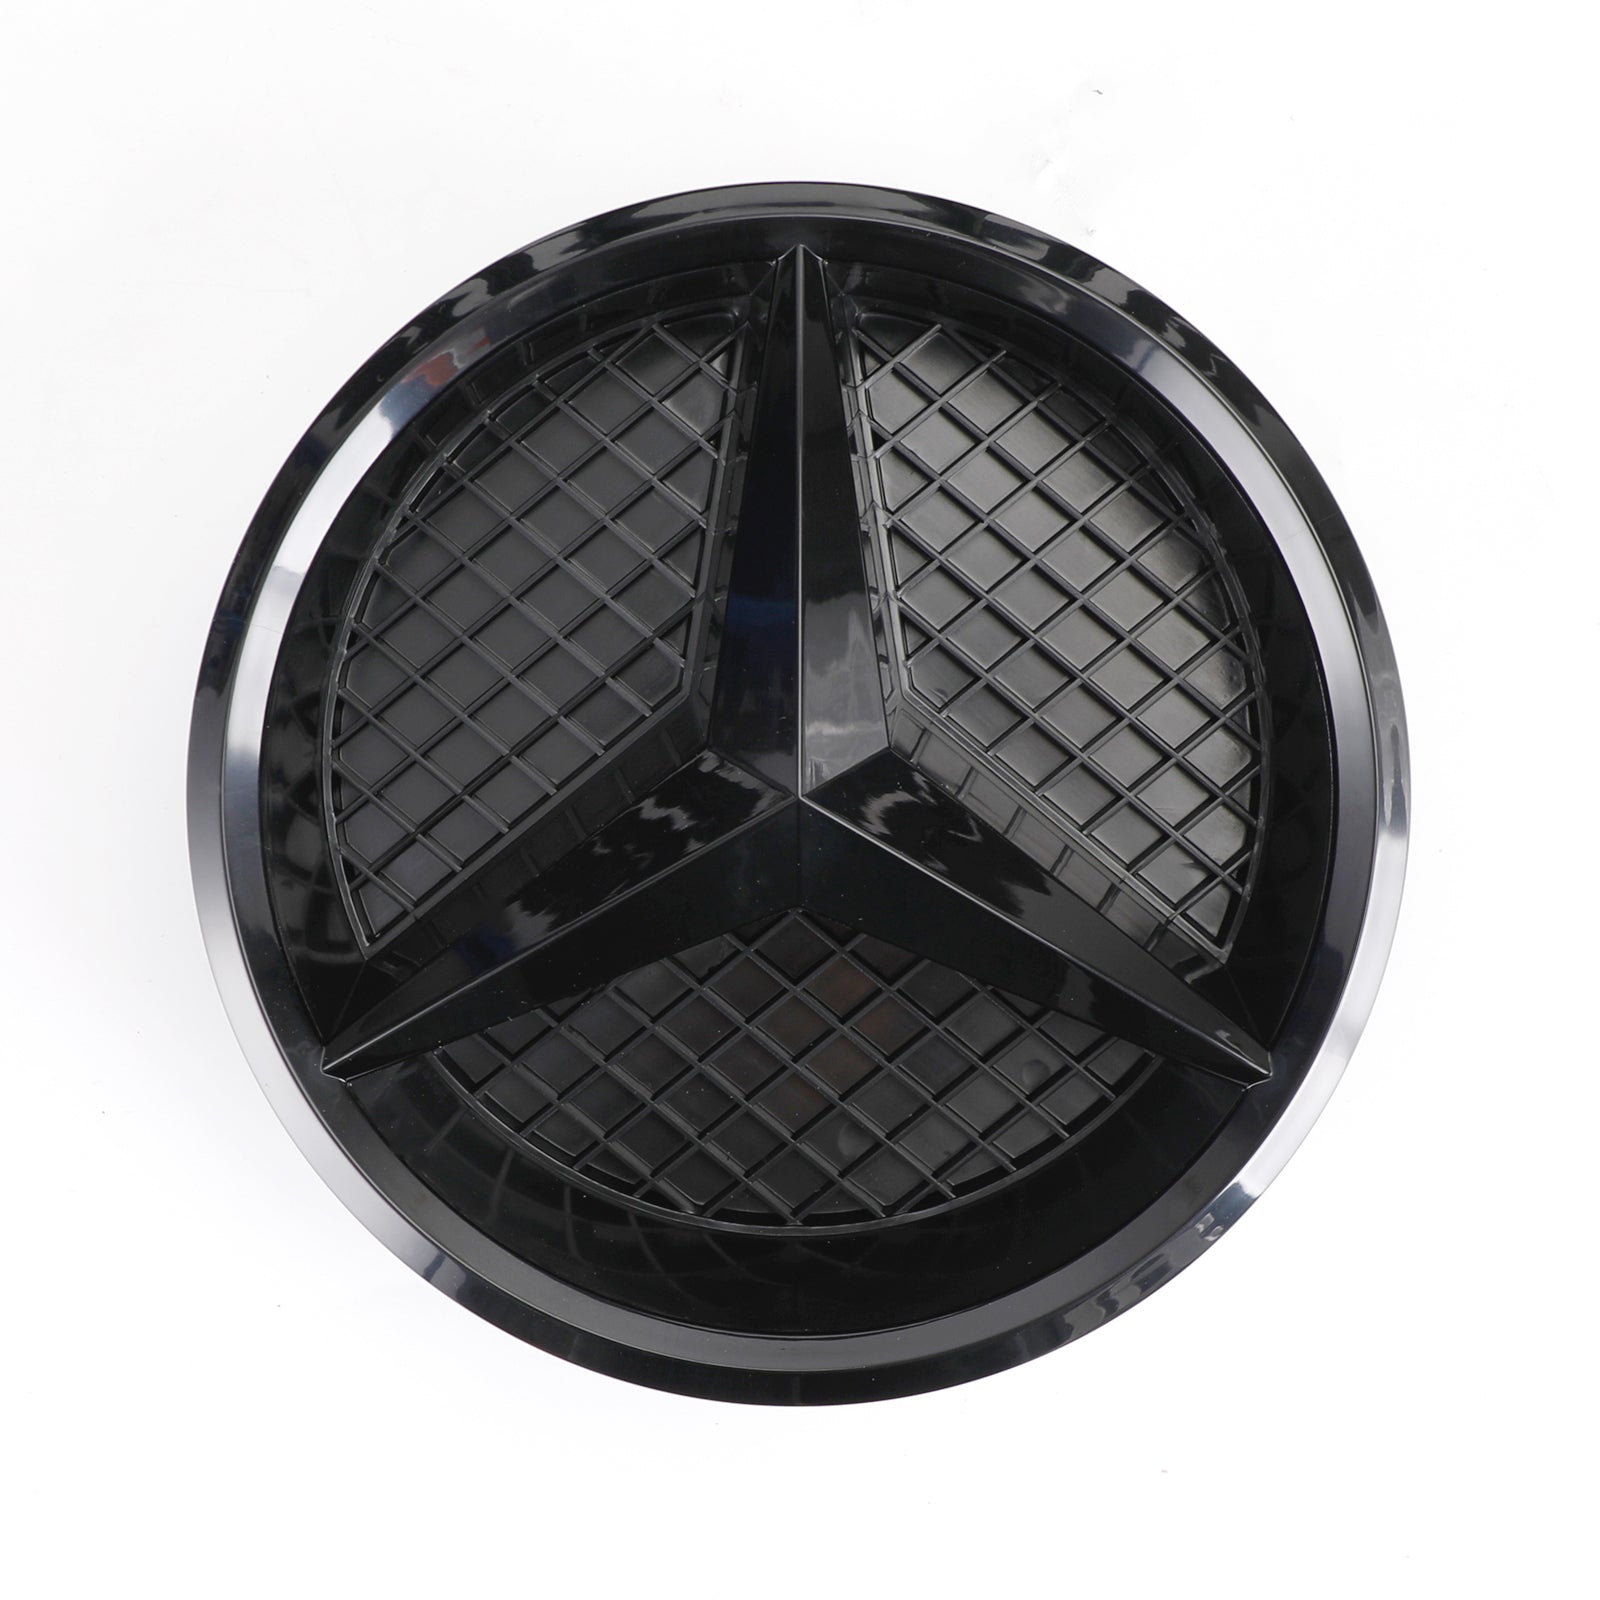 2013-2015 Mercedes Benz Classe A W176 Grille de calandre de pare-chocs avant noir brillant